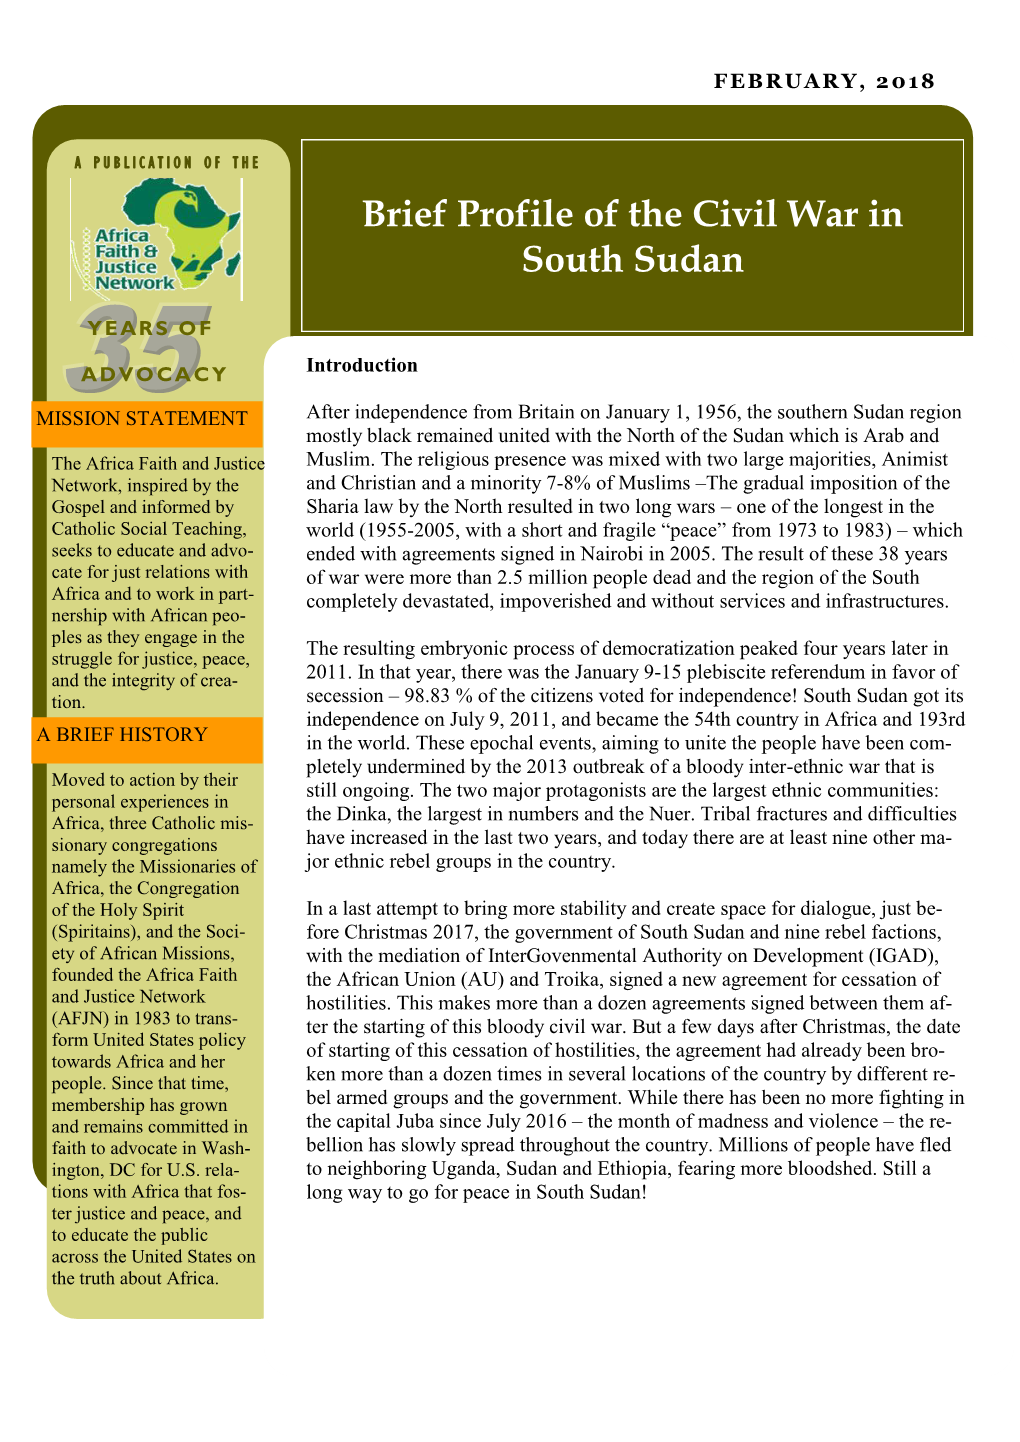 Brief Profile of the Civil War in South Sudan